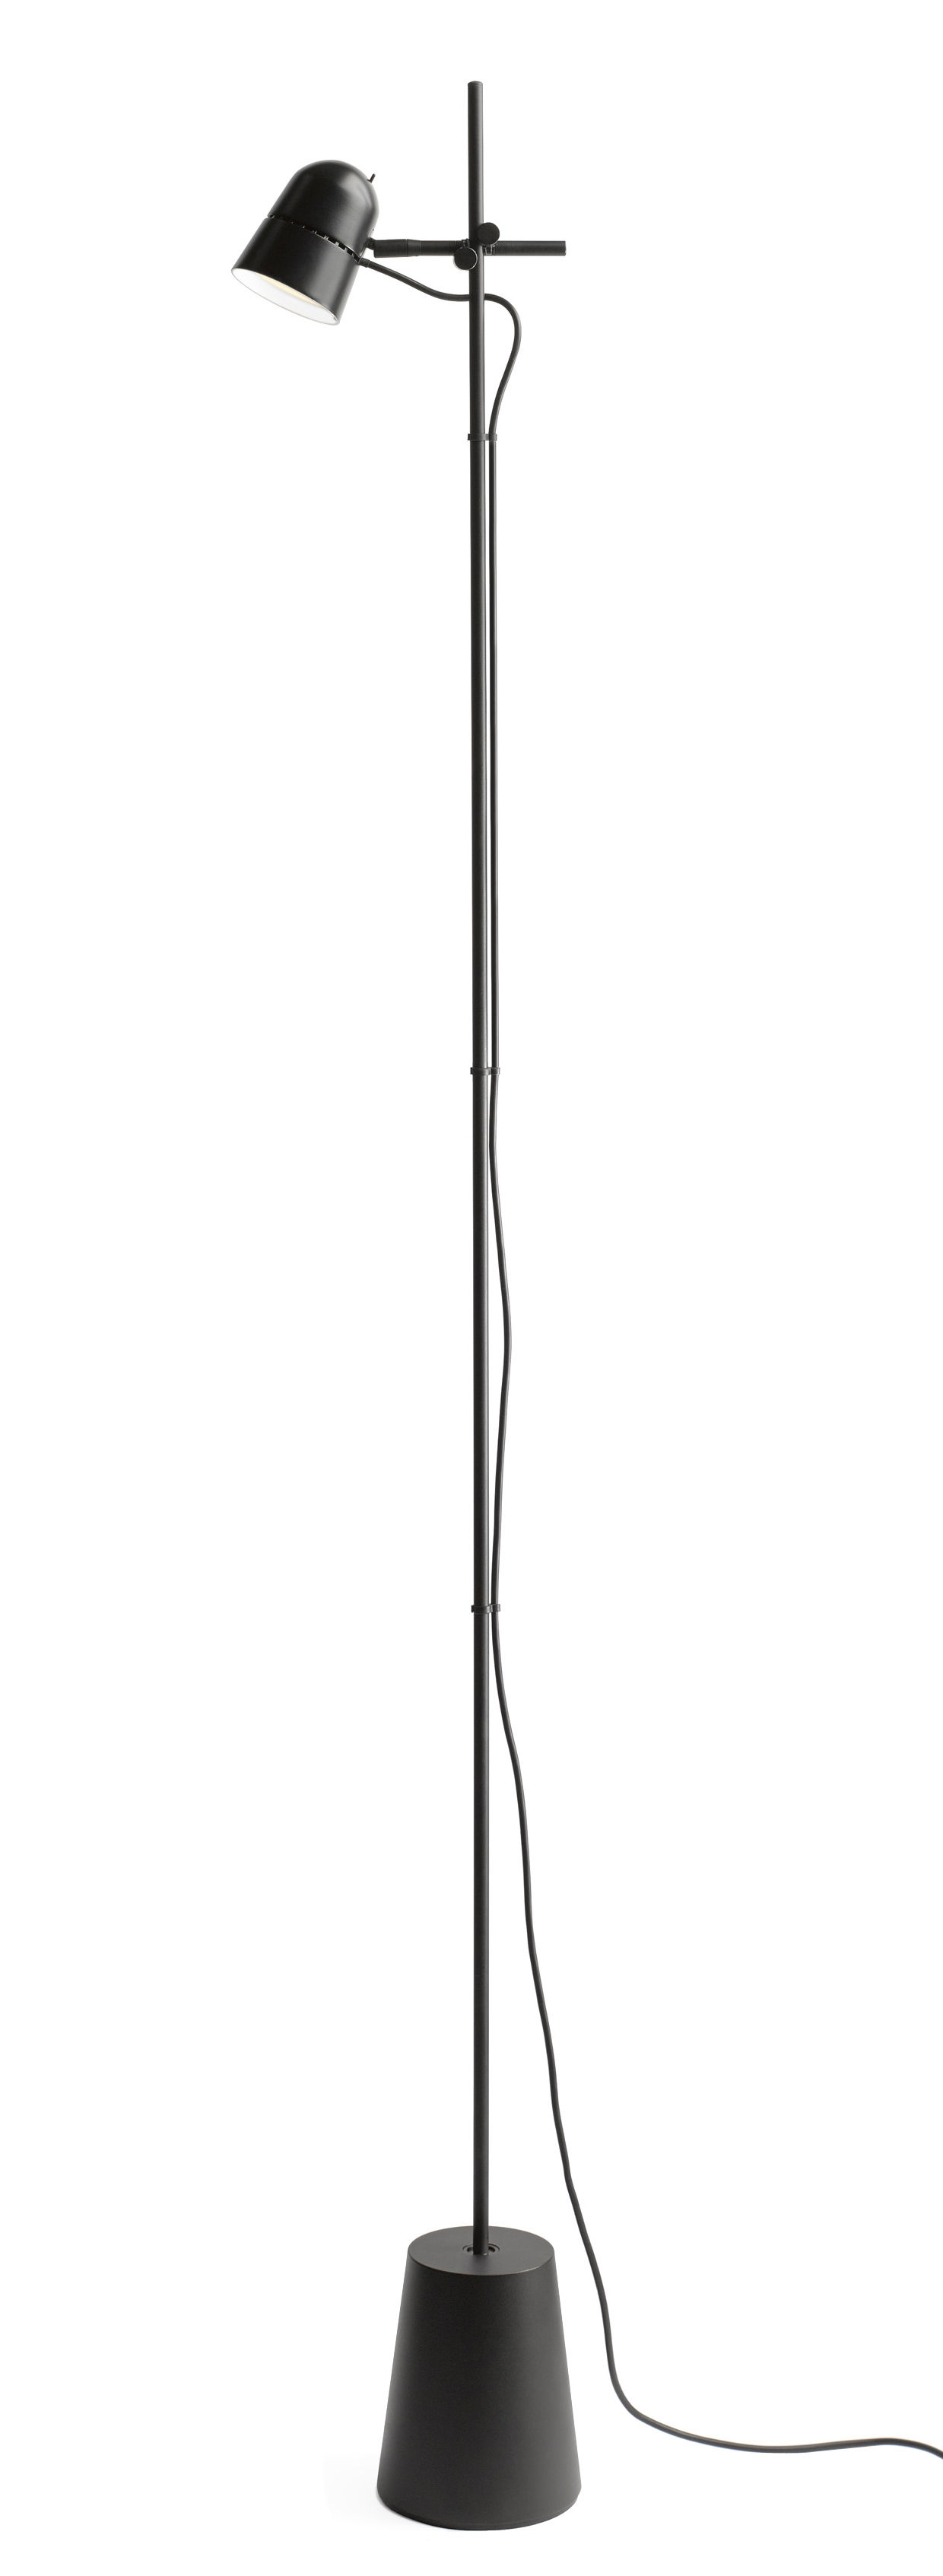 Lampadaire Counterbalance LED / Abat-jour orientable - H 170 cm - Luceplan noir en métal